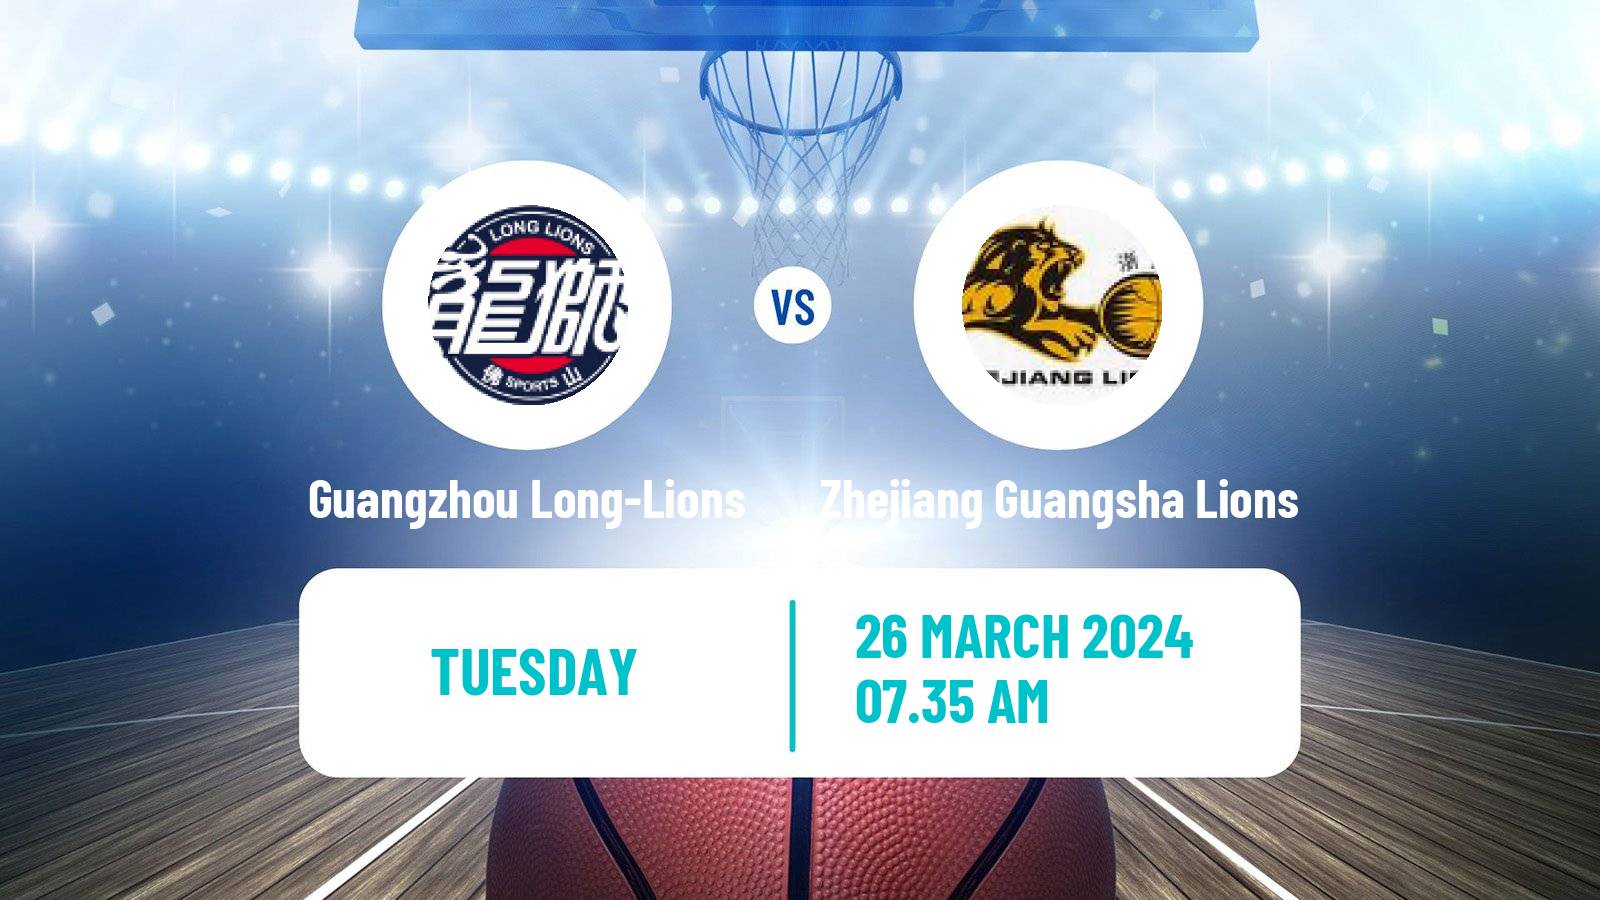 Basketball CBA Guangzhou Long-Lions - Zhejiang Guangsha Lions